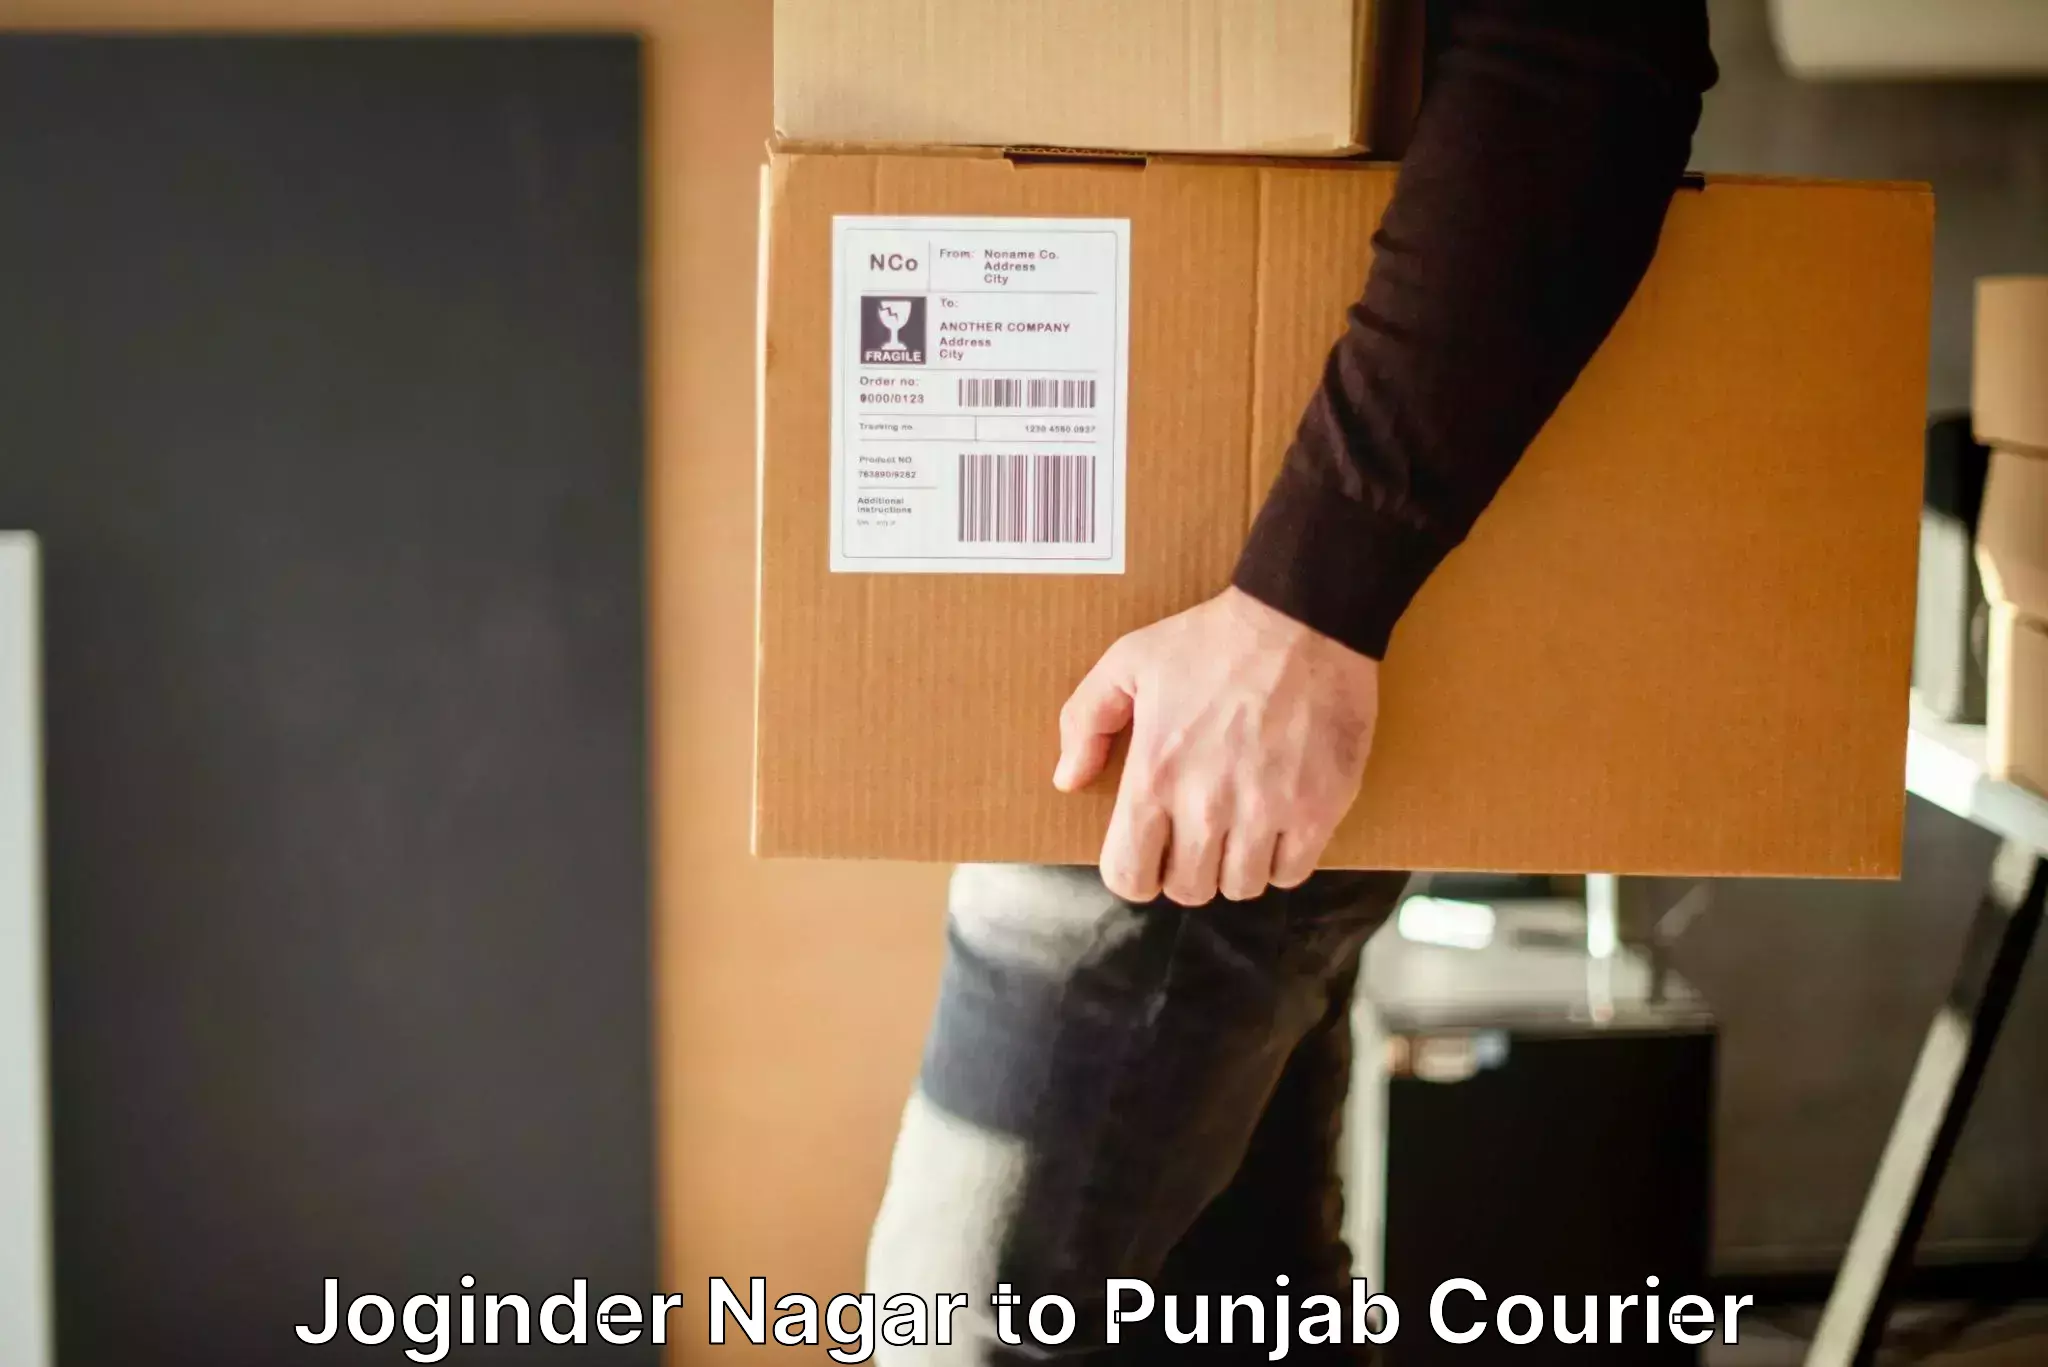 Baggage shipping experience Joginder Nagar to Punjab